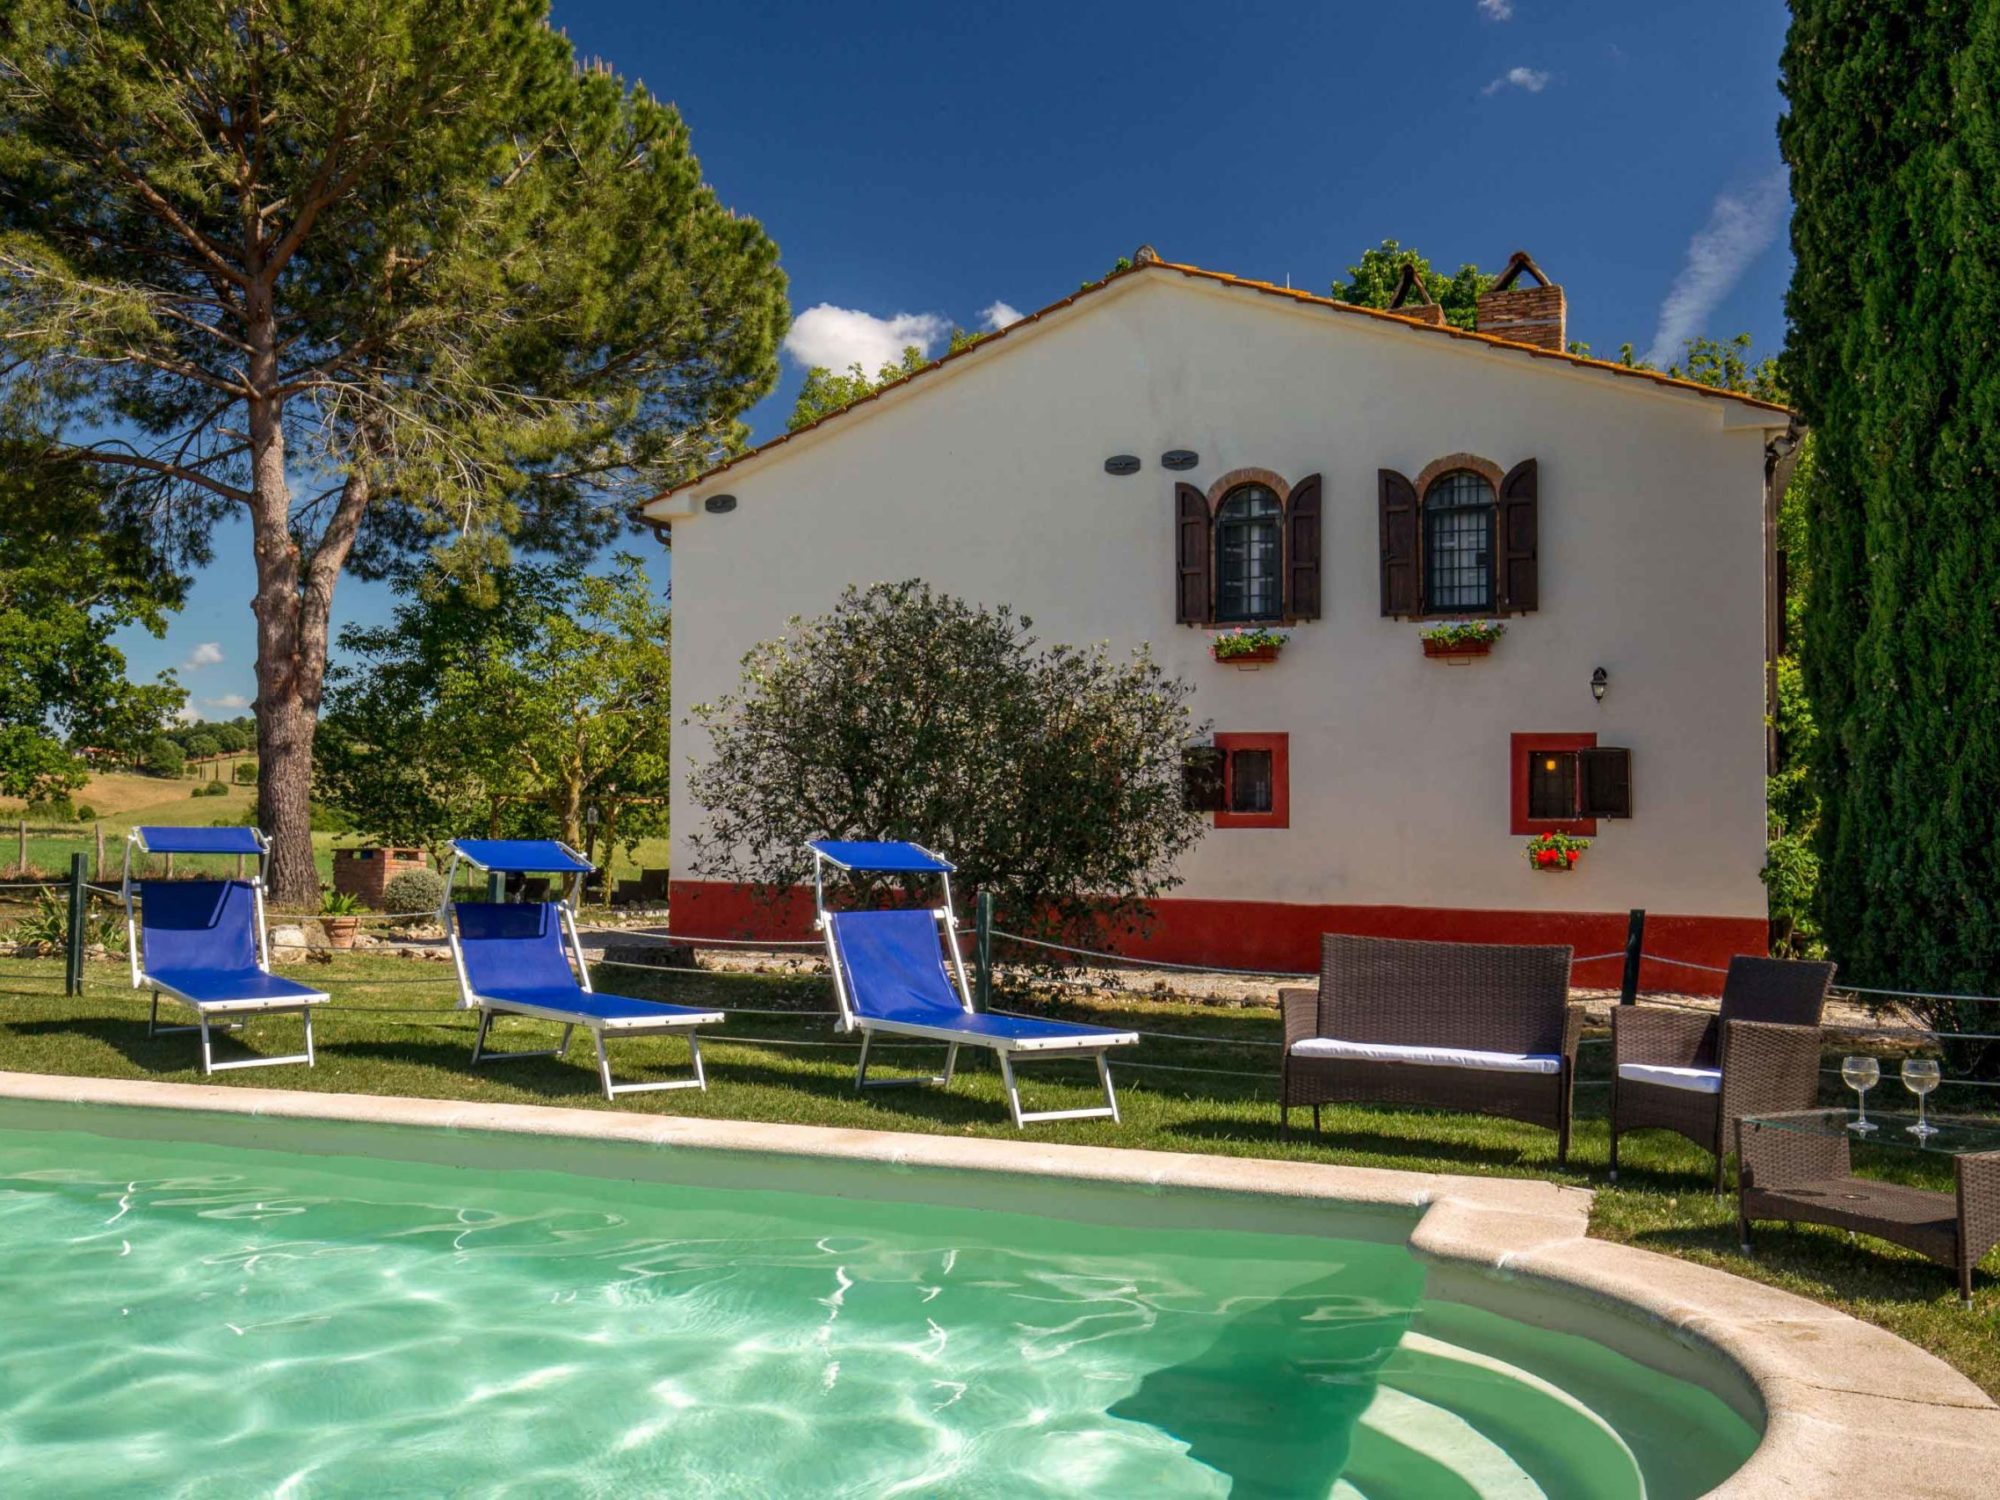 borgovera-tuscany-vacation-toscana-maremma-terme-saturnia-manciano-dettagli-giardino-piscina-2